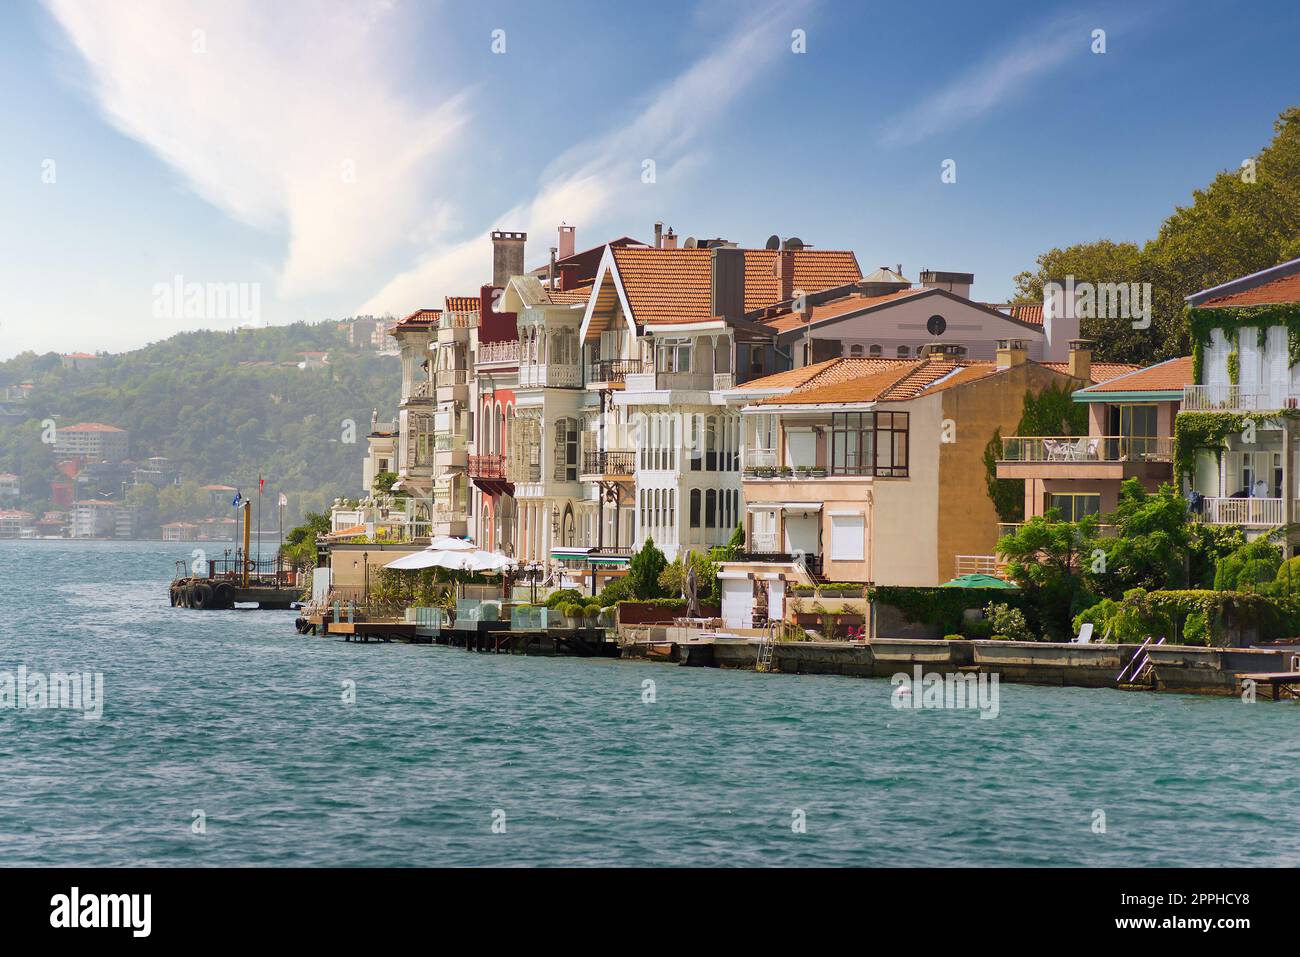 Traditionelle Häuser auf der europäischen Seite der Bosporus-Straße, Istanbul, Türkei, vor dem Hintergrund grüner Berge Stockfoto